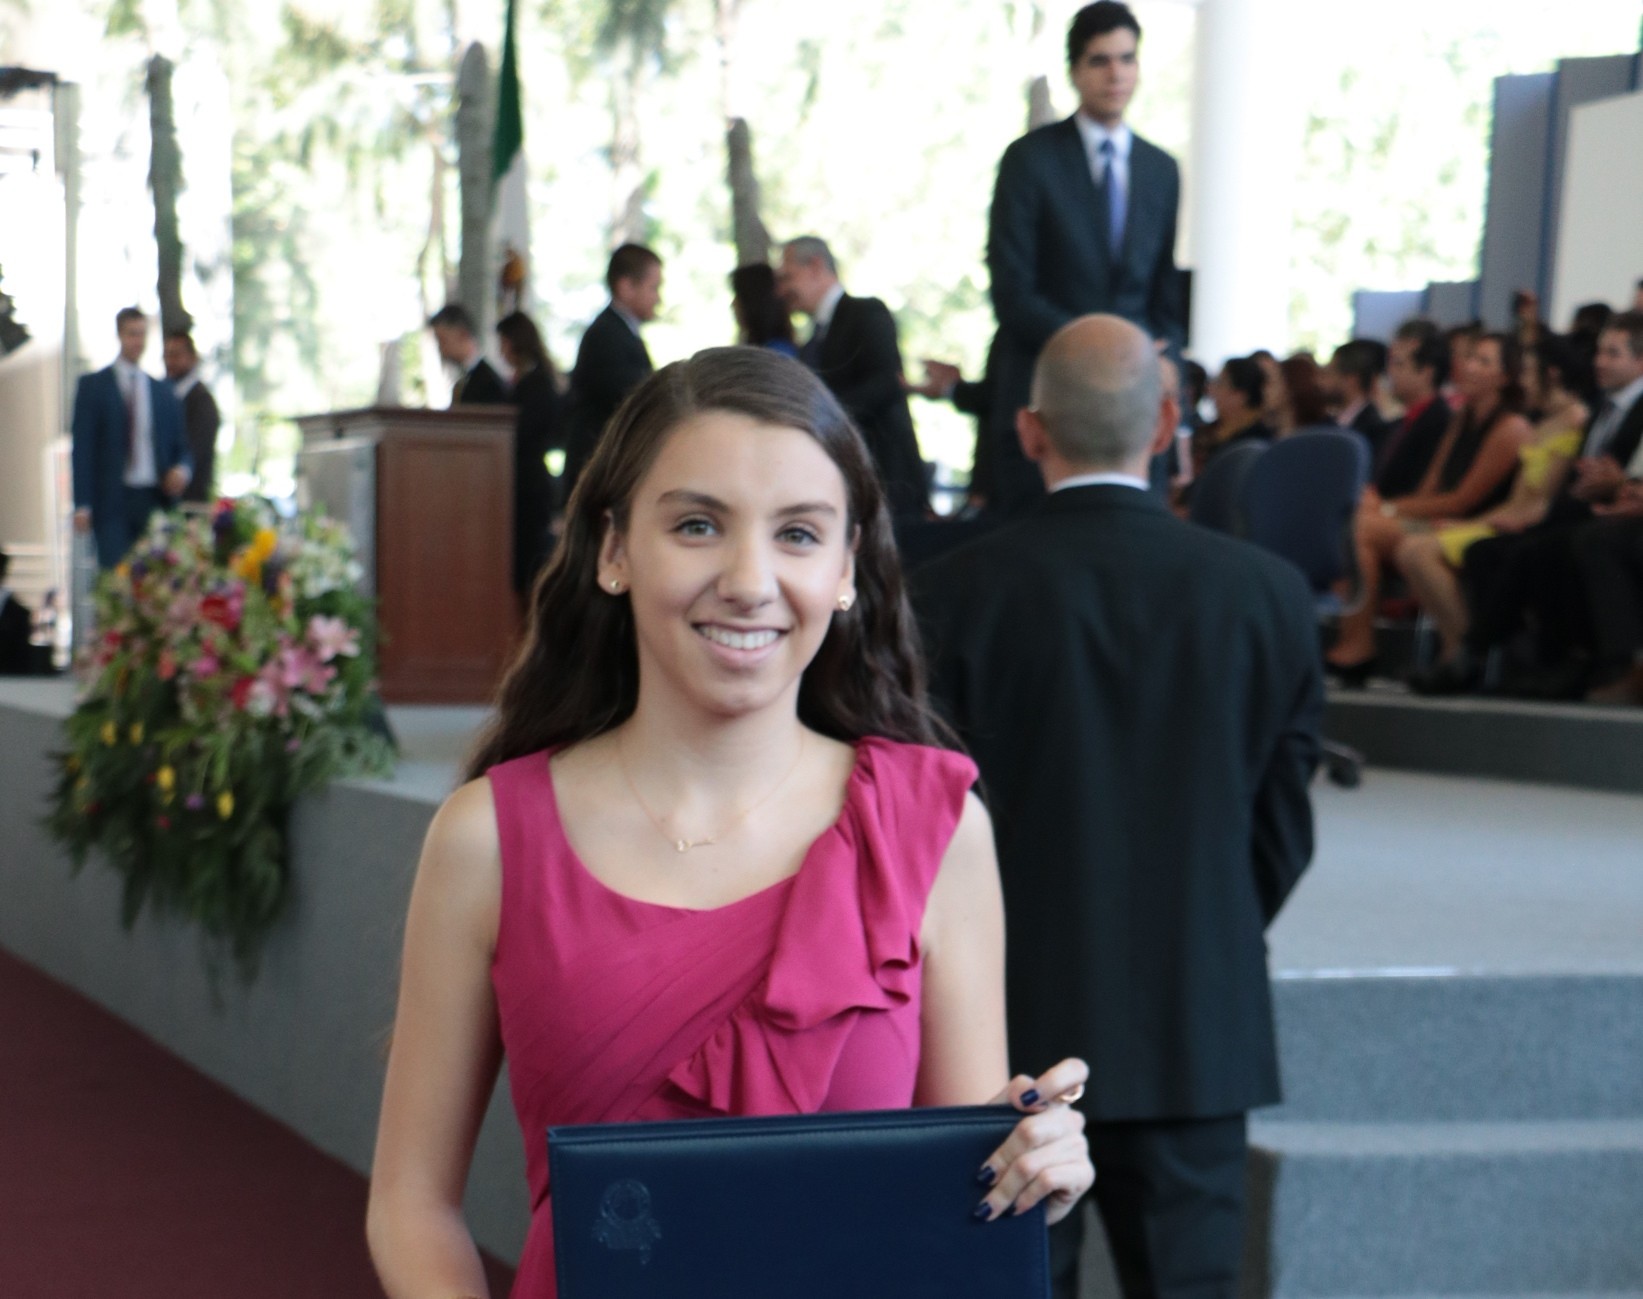 Graduación de preparatoria, generación Mayo 2018.